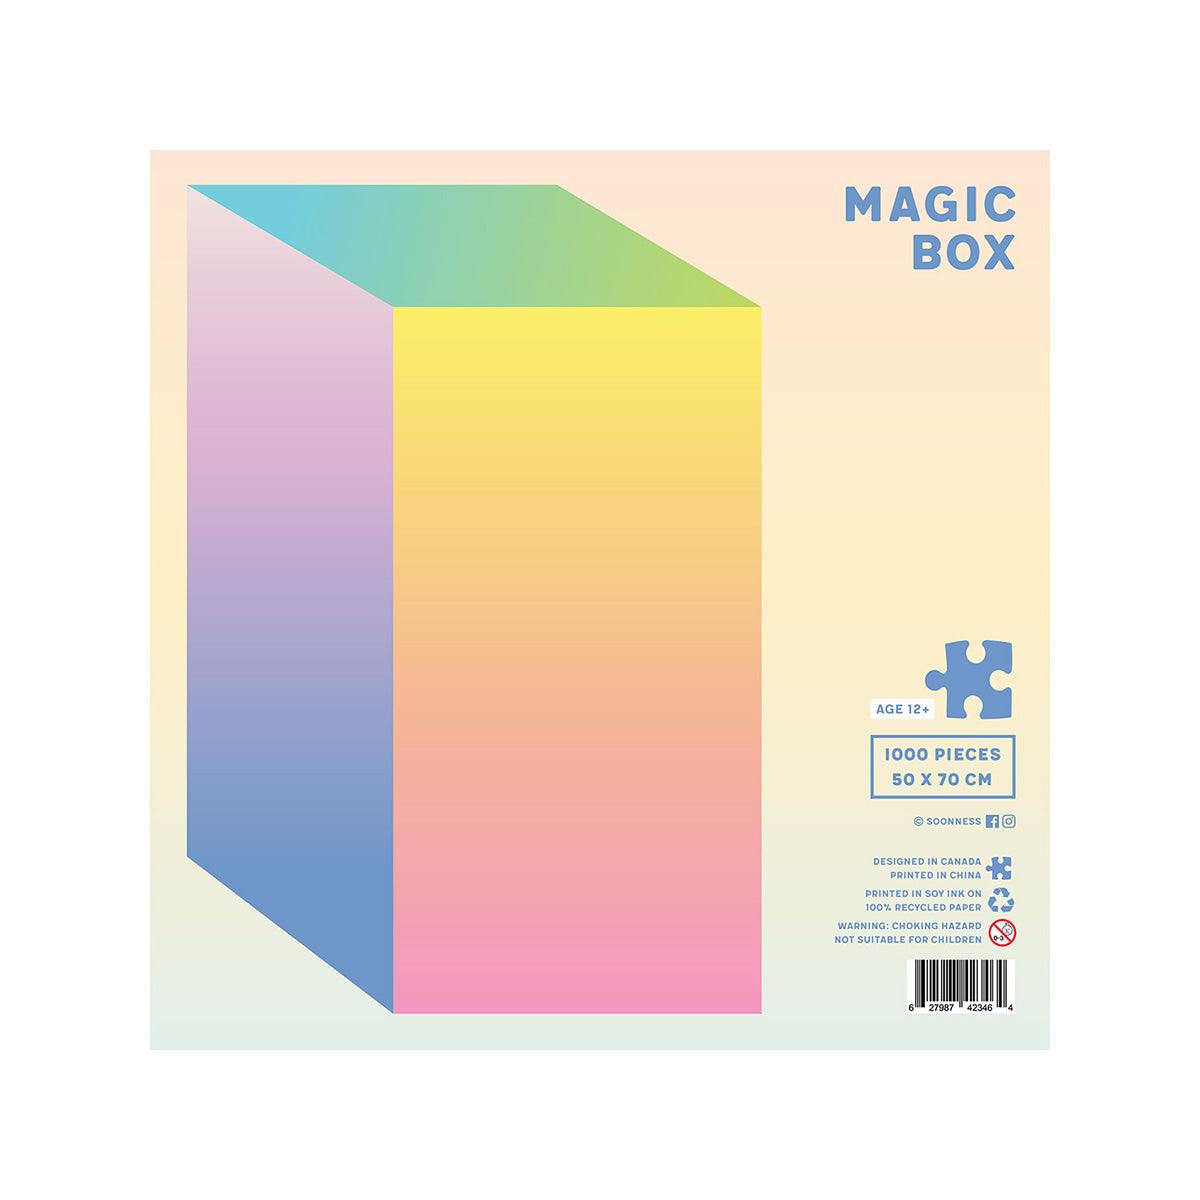 SOONNESS 1000 piece gradient puzzle magic box